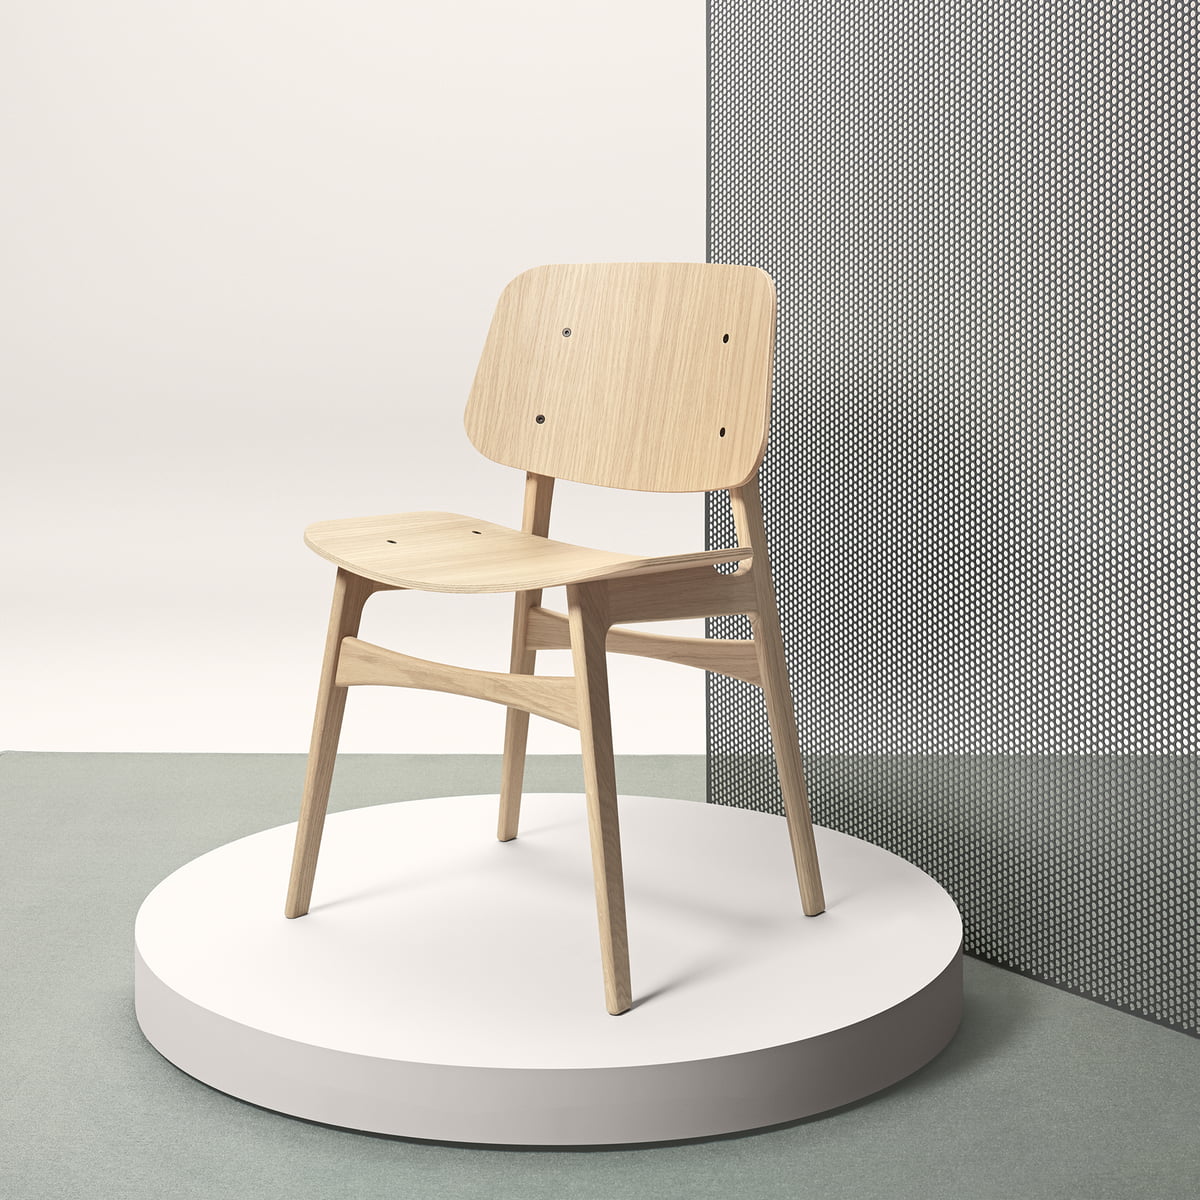 Søborg Chair (model 3050) by Fredericia